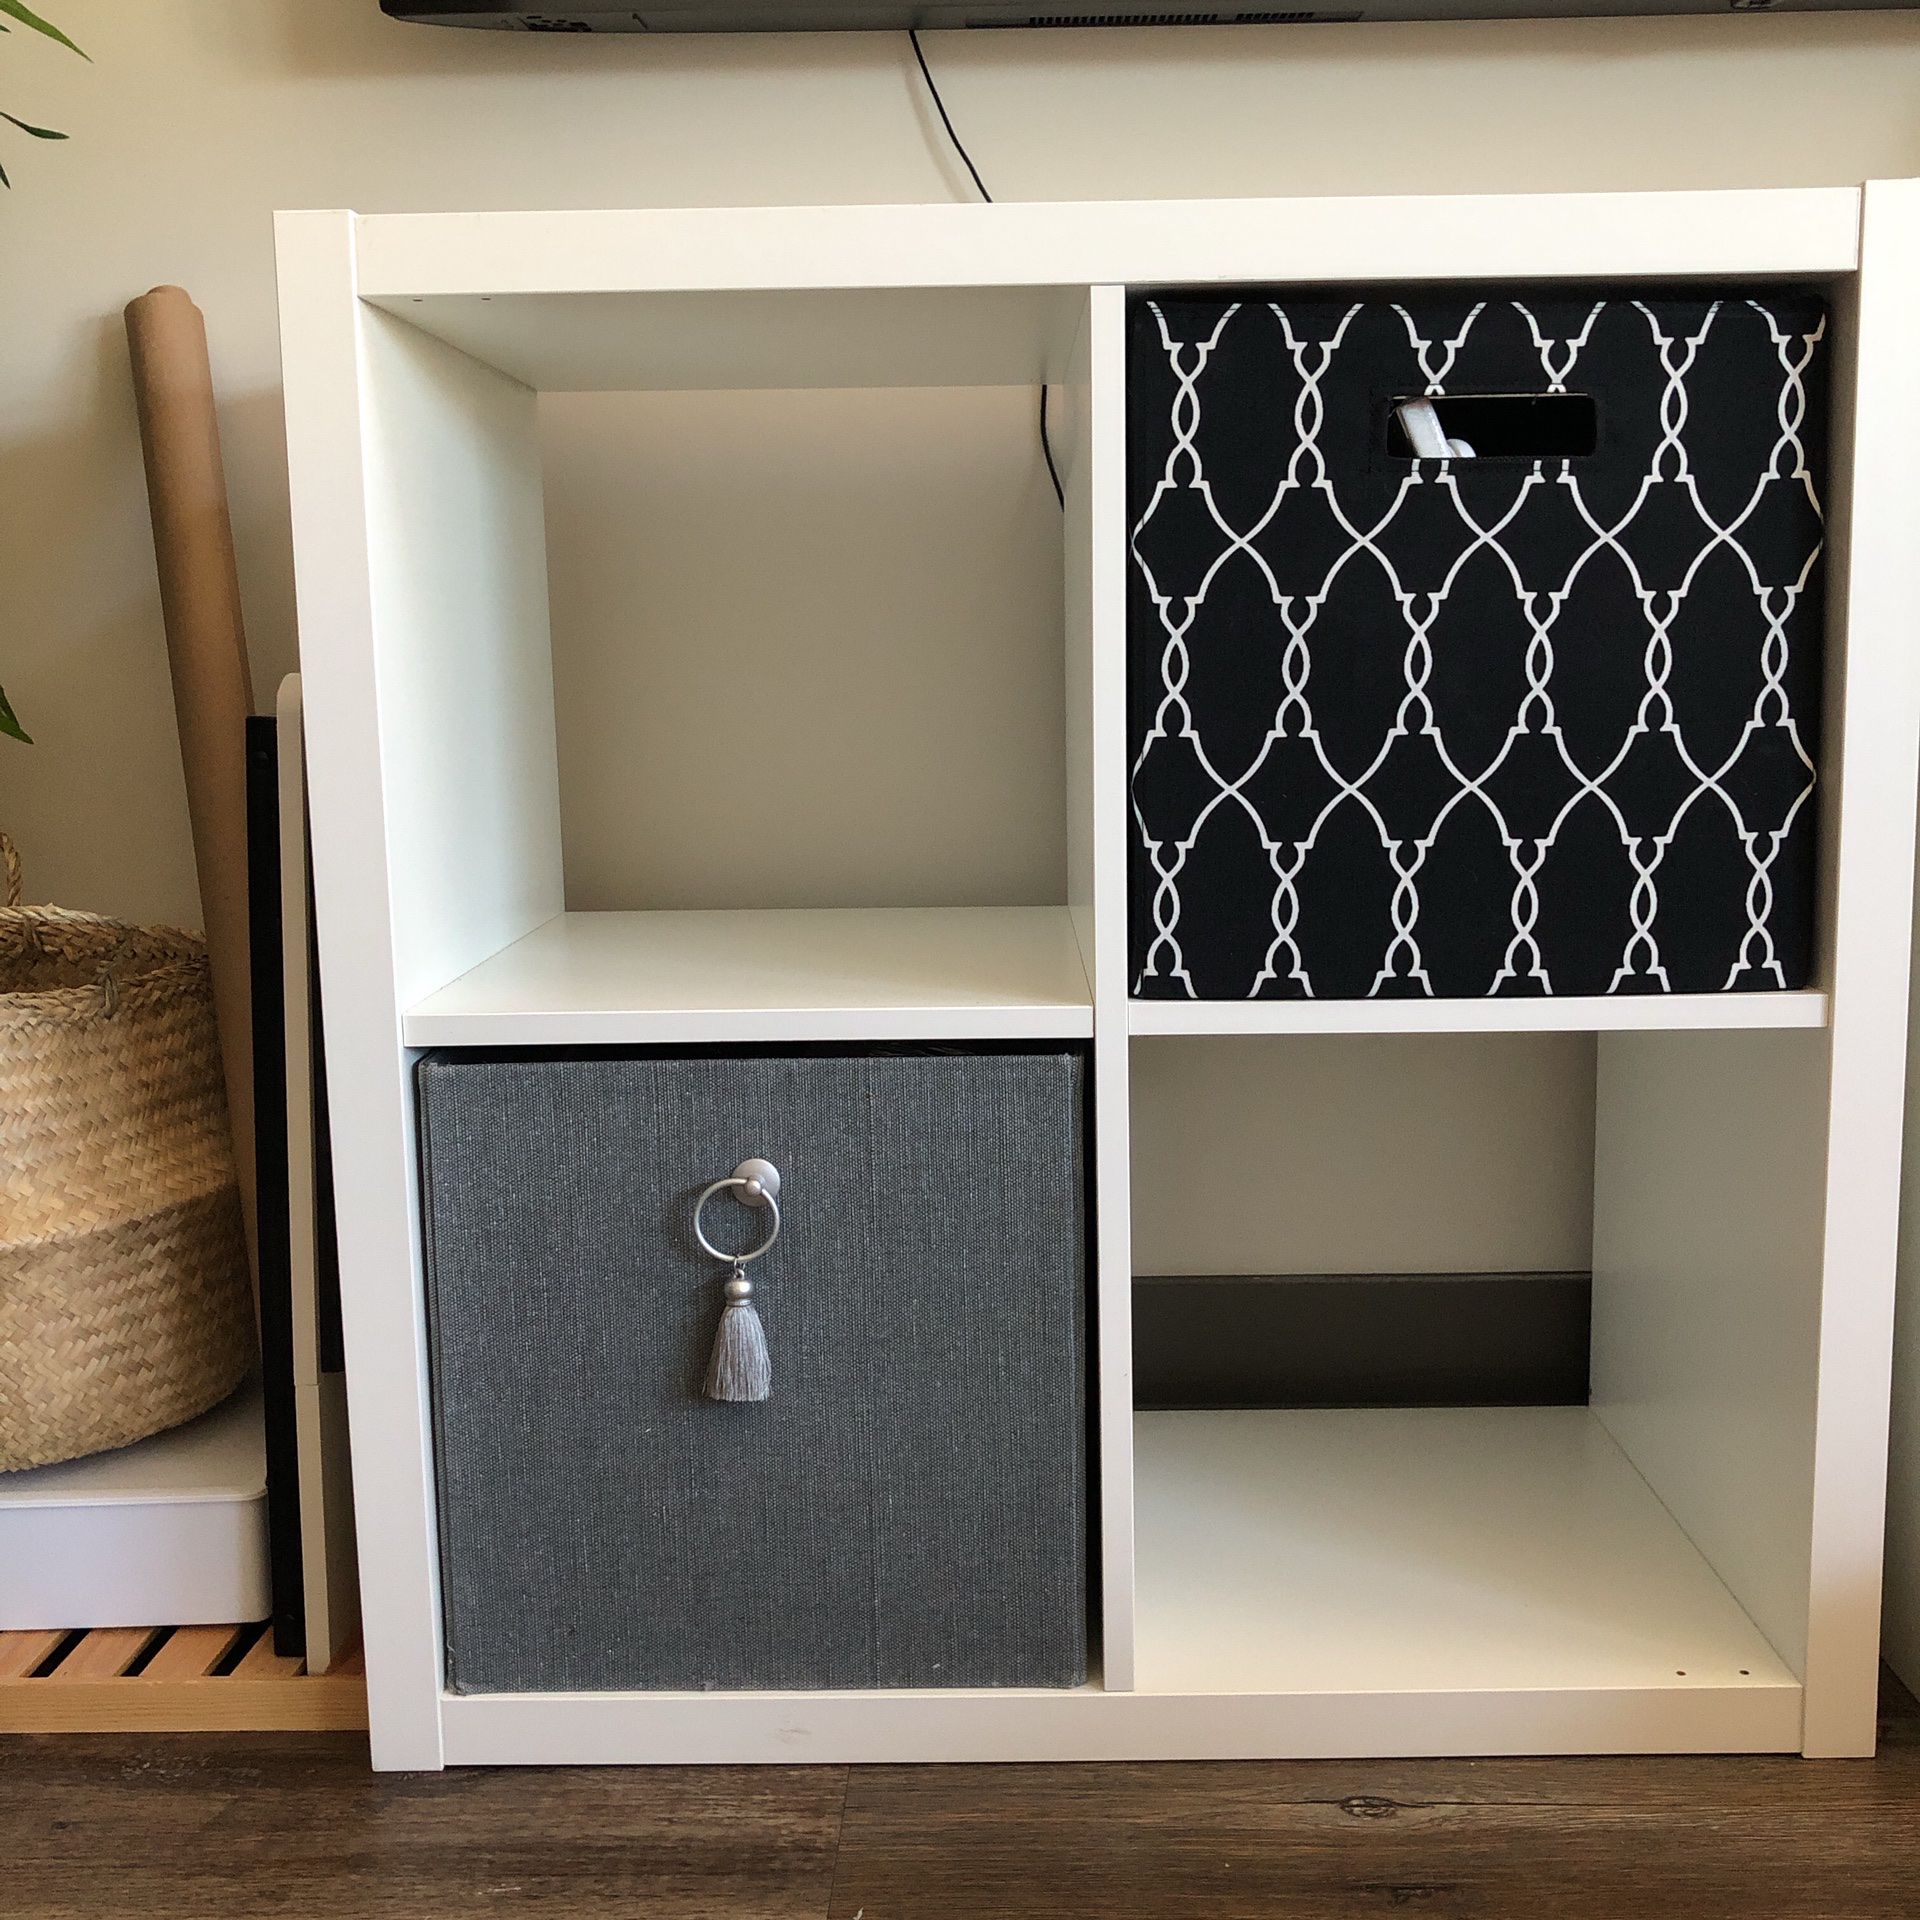 4 Cube Decorative Bookshelf White - Room Essentials